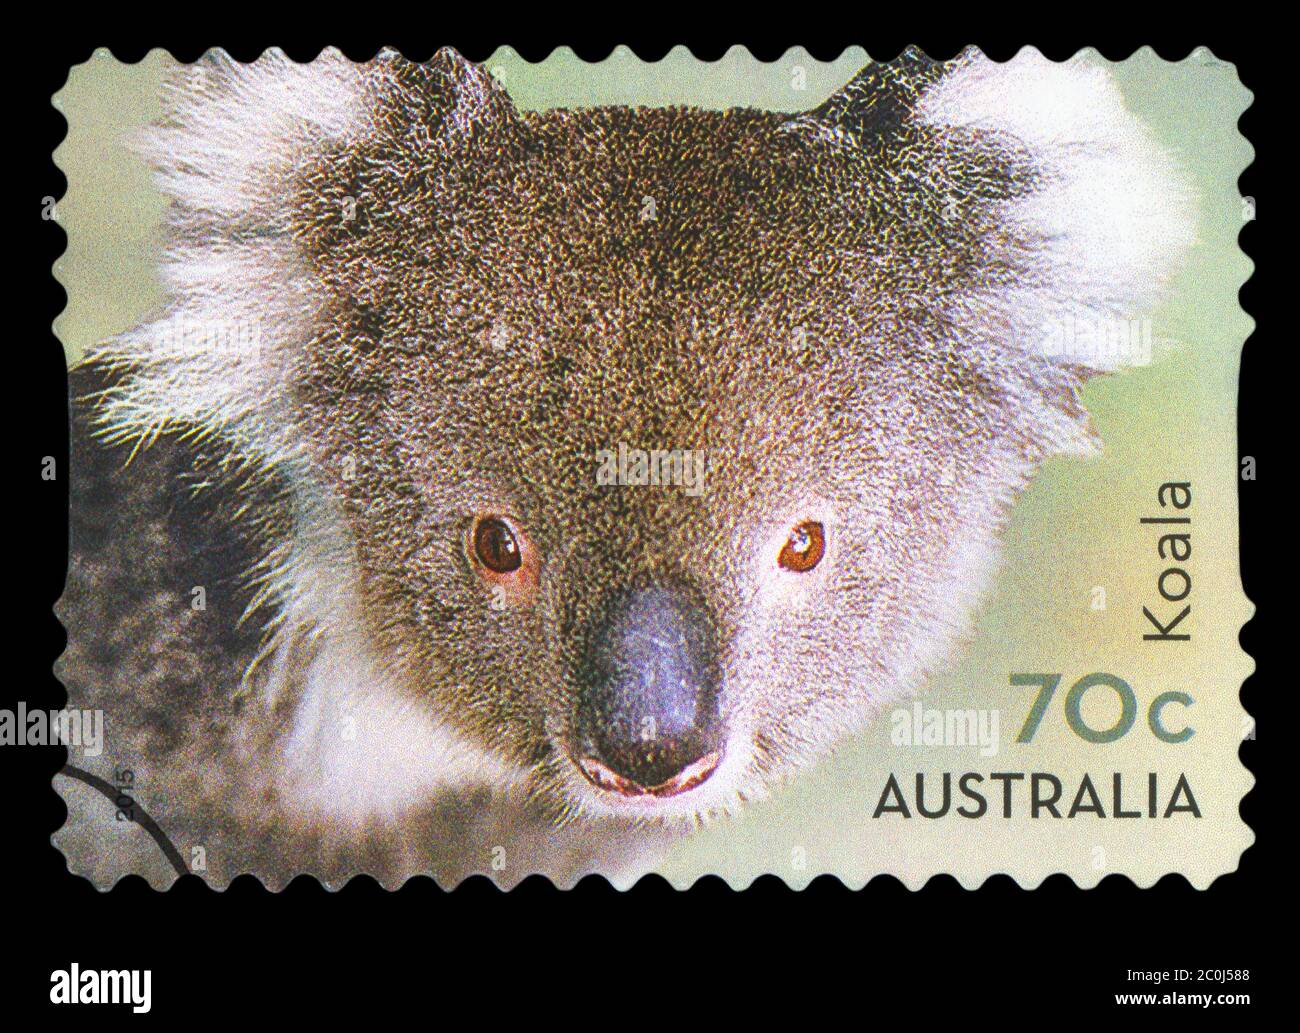 AUSTRALIEN - UM 2015: Eine in AUSTRALIEN gedruckte Briefmarke zeigt den Koala-Bären, International Post Series, um 2015. Stockfoto